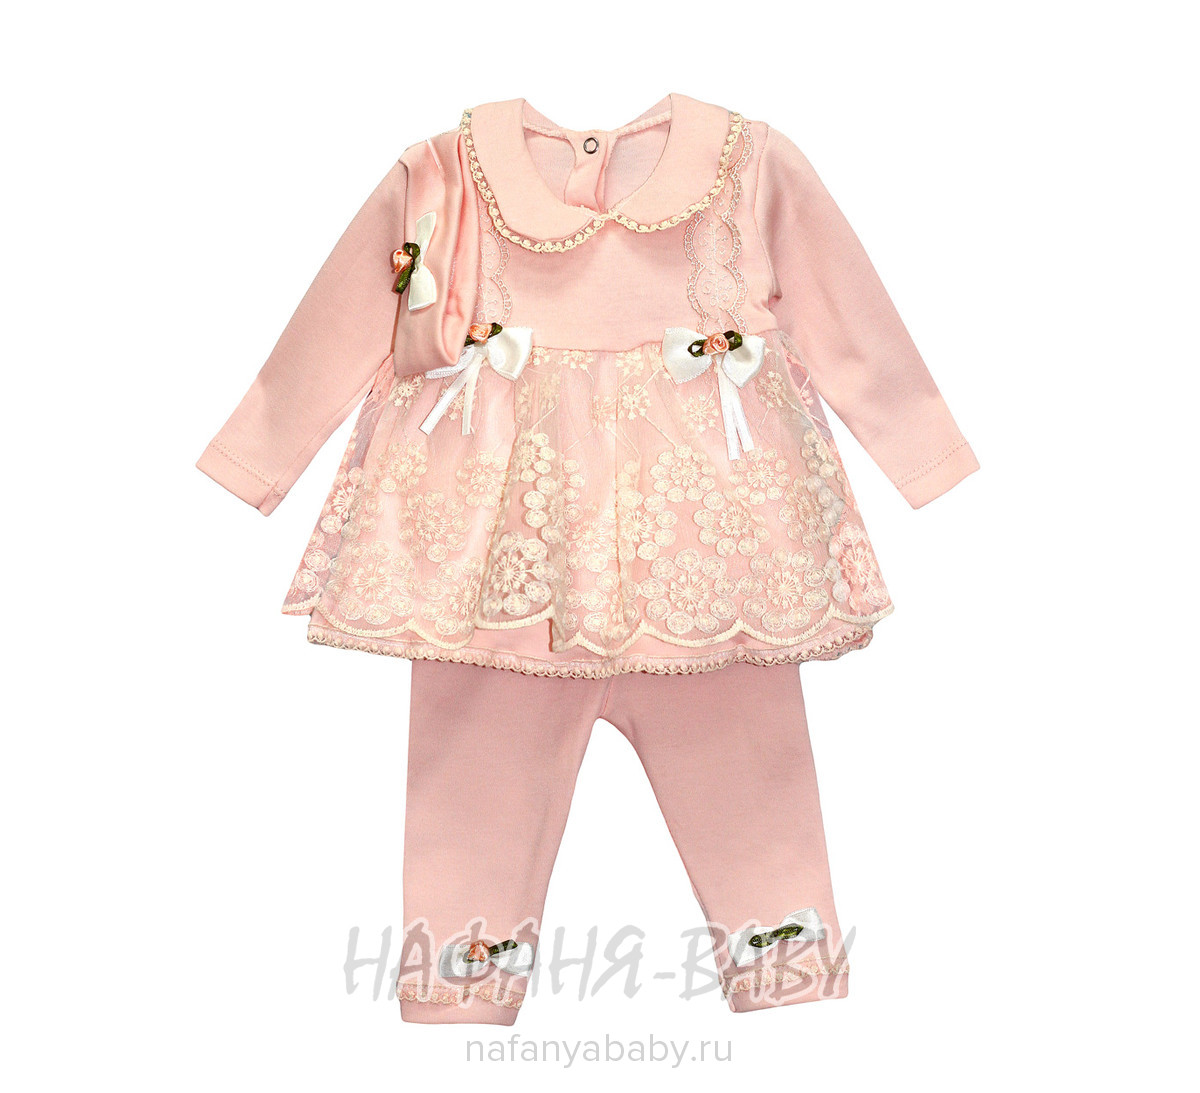 Детский костюм для новорожденных FINDIK арт: 61041, 0-12 мес, оптом Турция